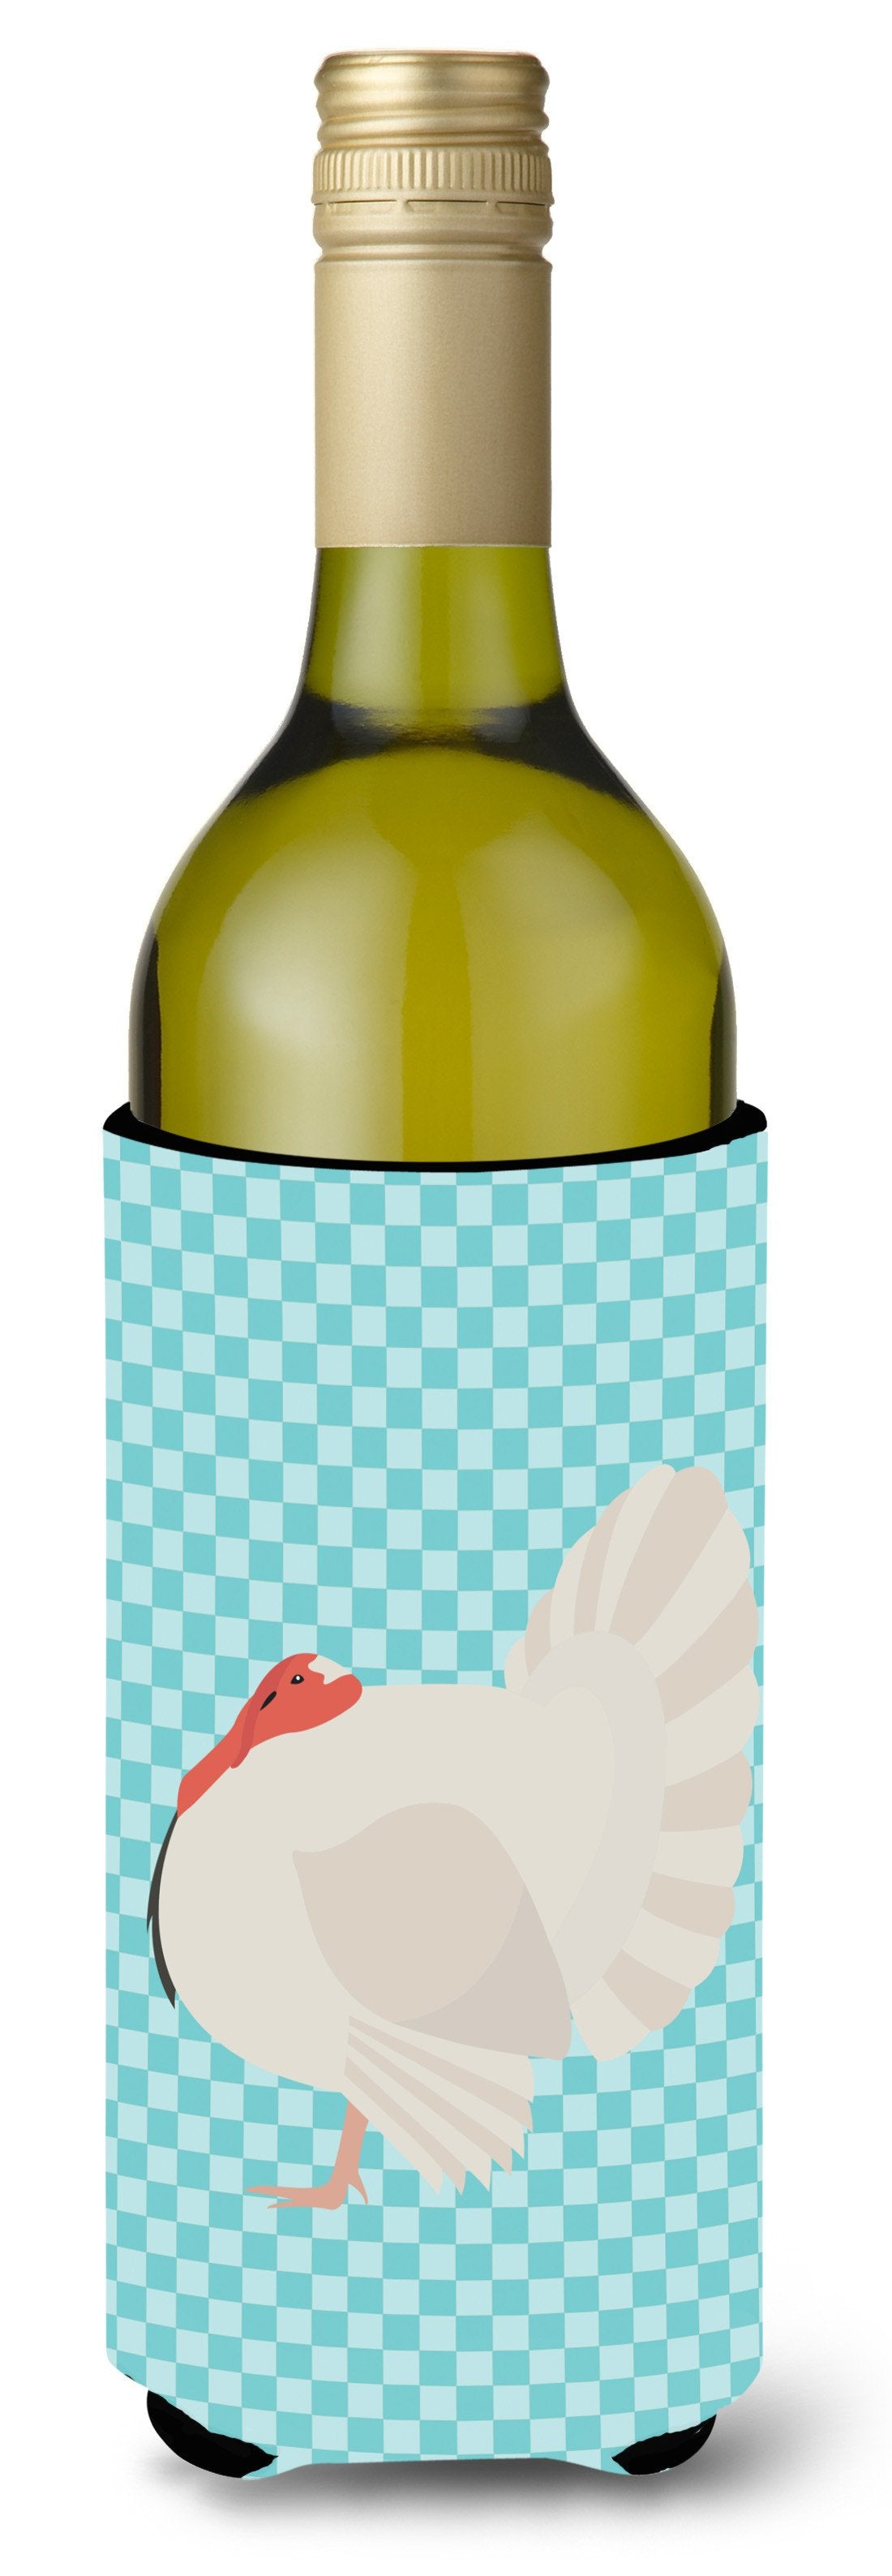 White Holland Turkey Blue Check Wine Bottle Beverge Insulator Hugger BB8157LITERK by Caroline's Treasures